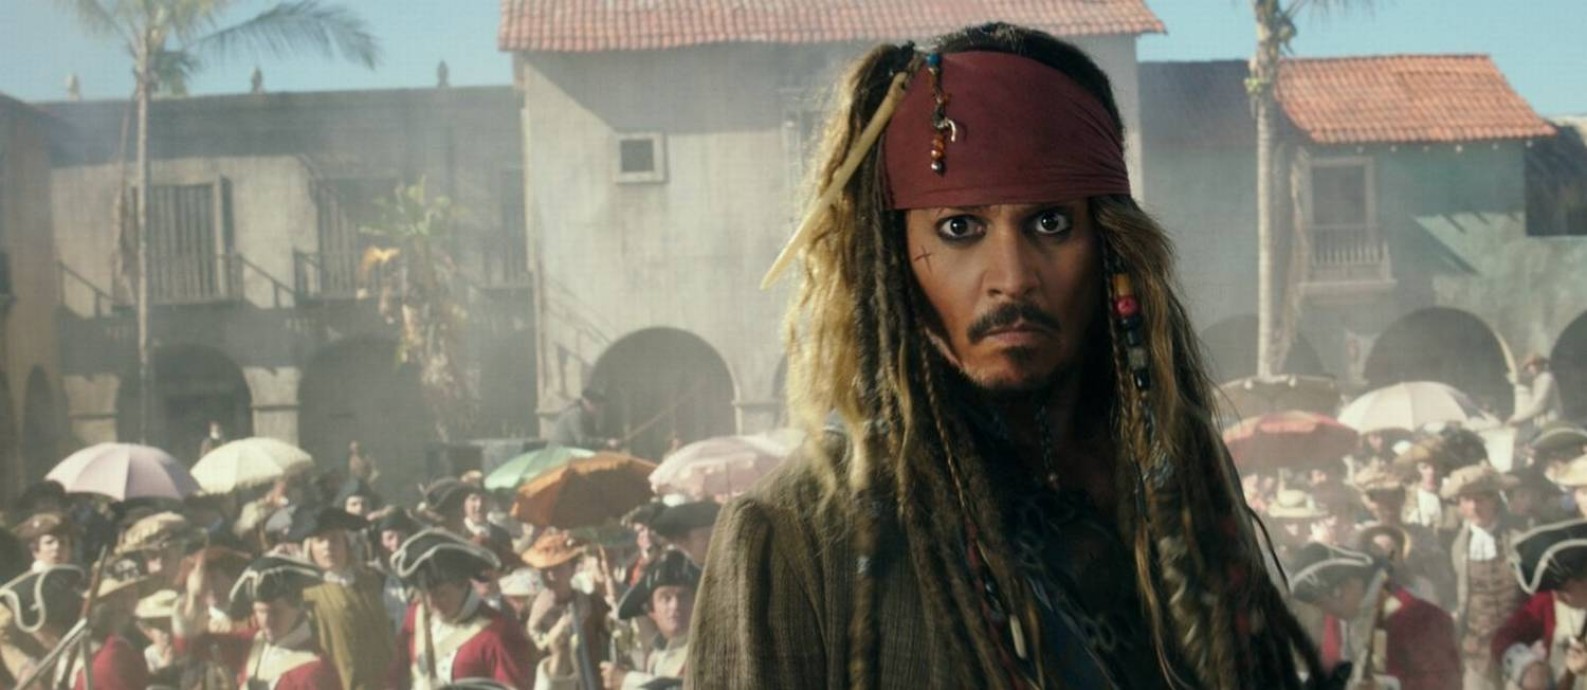 Johnny Depp em cena de 'Piratas do Caribe: A Vingança de Salazar' Foto: Divulgação